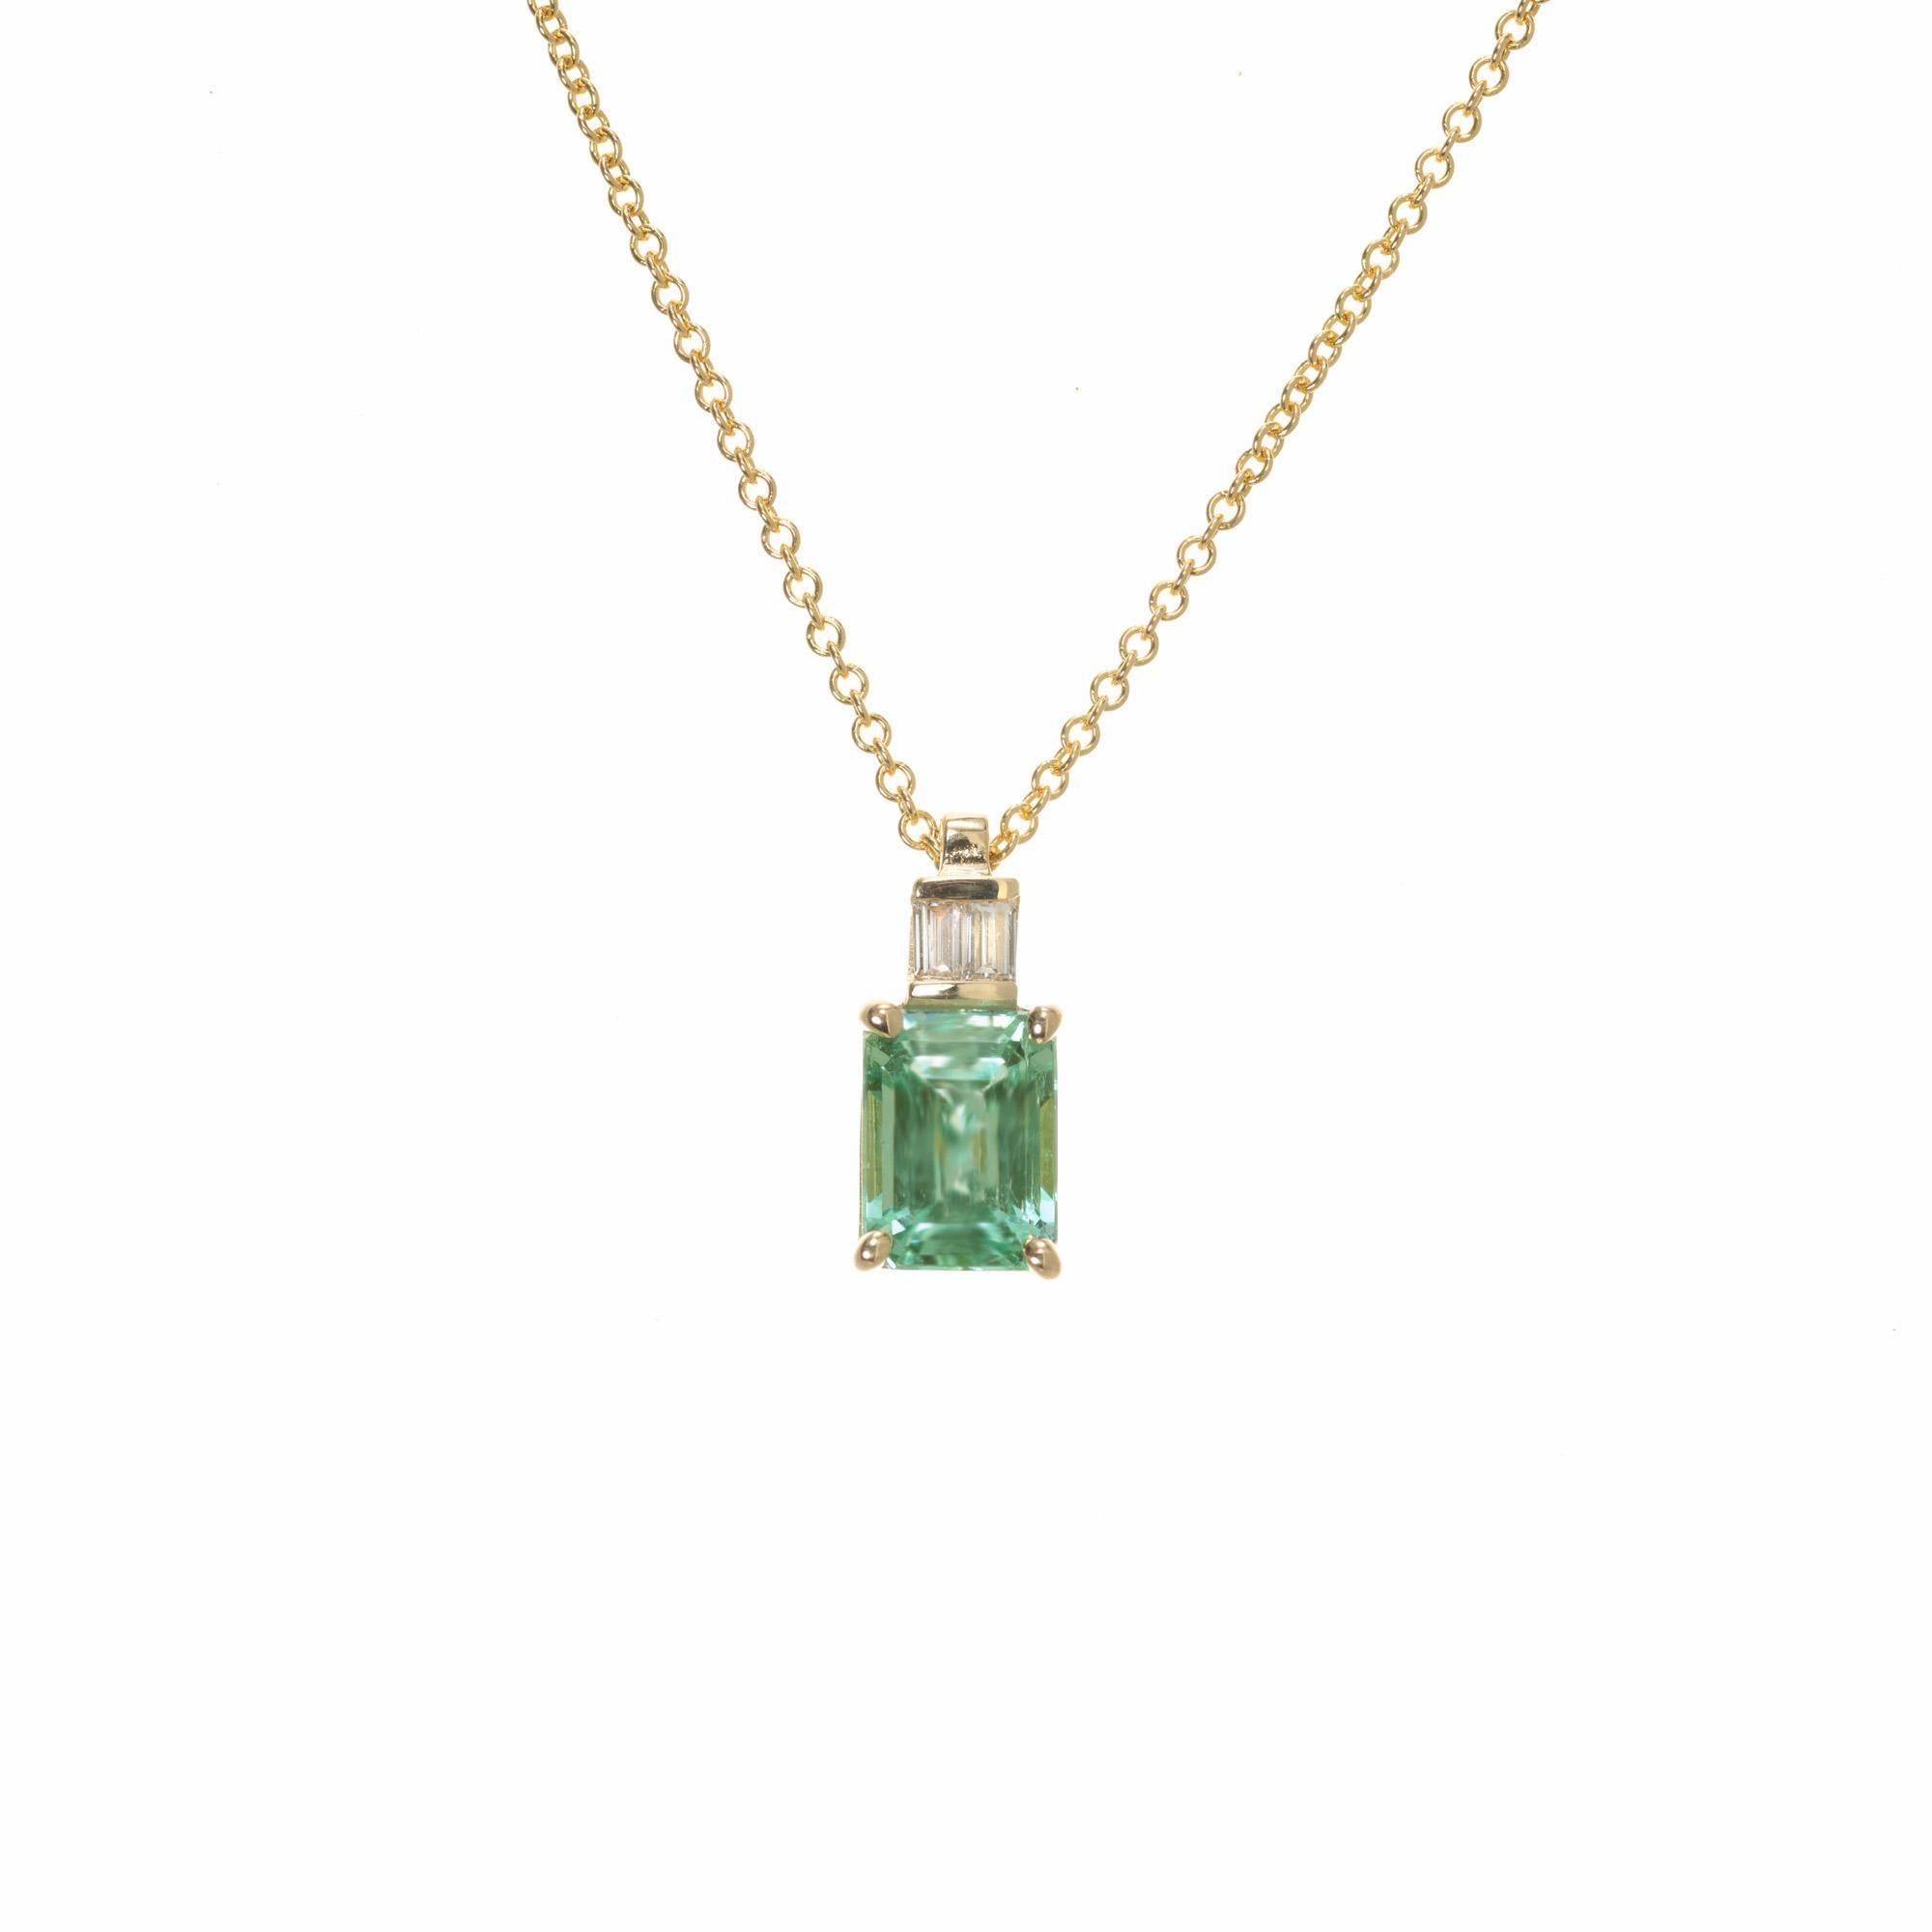 Collier pendentif en émeraude et diamants de 1,89 carat, de couleur vert bleuté naturel. Cette rare émeraude certifiée GIA provient d'une succession des années 1920 et a été placée dans une monture en or jaune 14k avec 2 diamants baguettes accentués